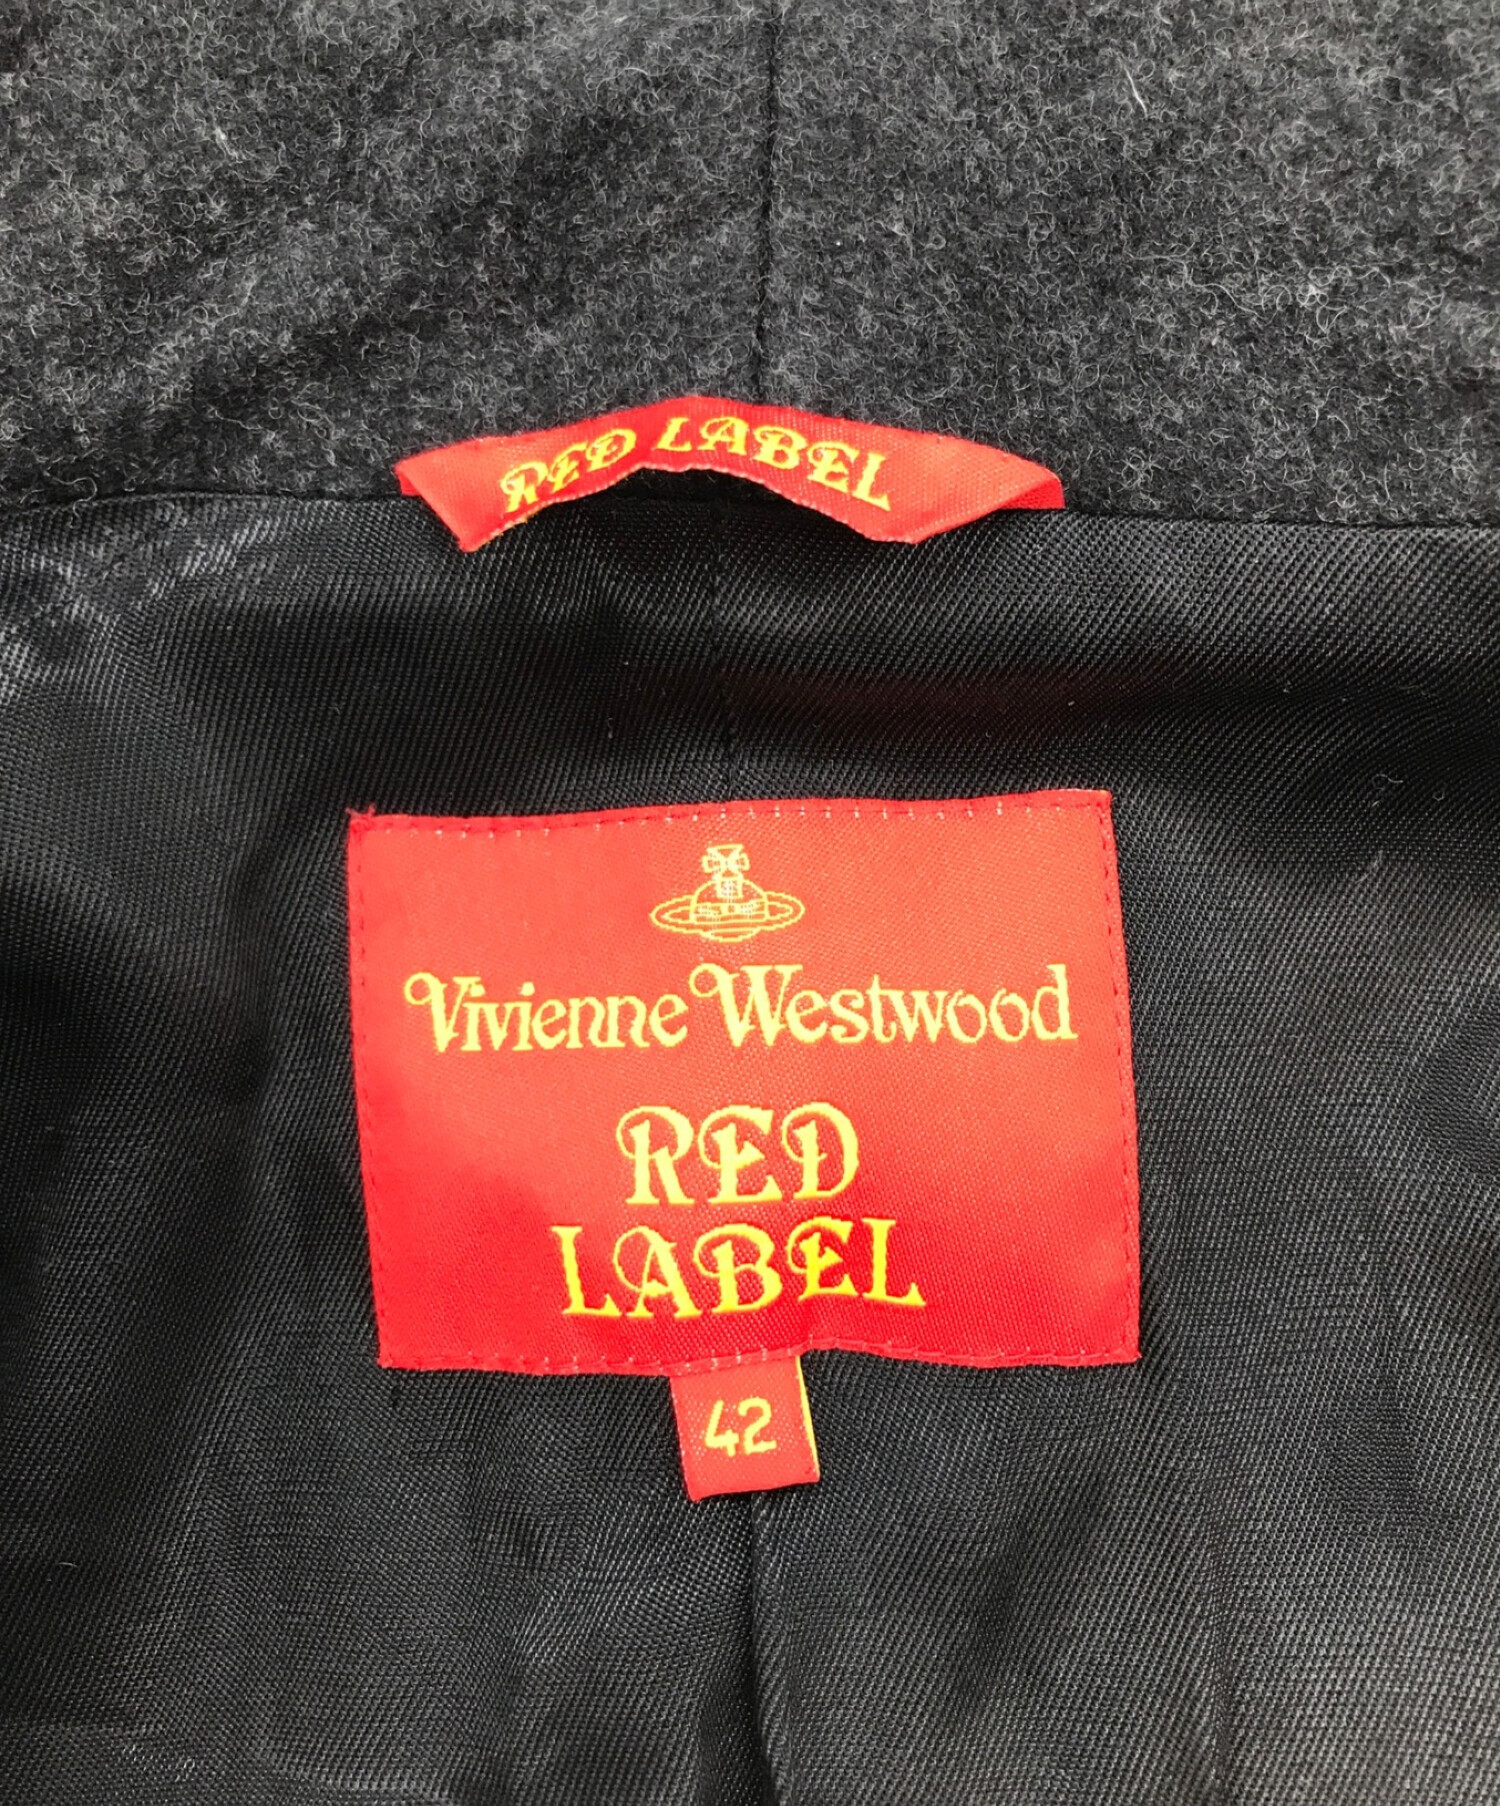 Vivienne Westwood RED LABEL (ヴィヴィアンウエストウッドレッドレーベル) カシミヤブレンドウールコート チャコールグレー  サイズ:42